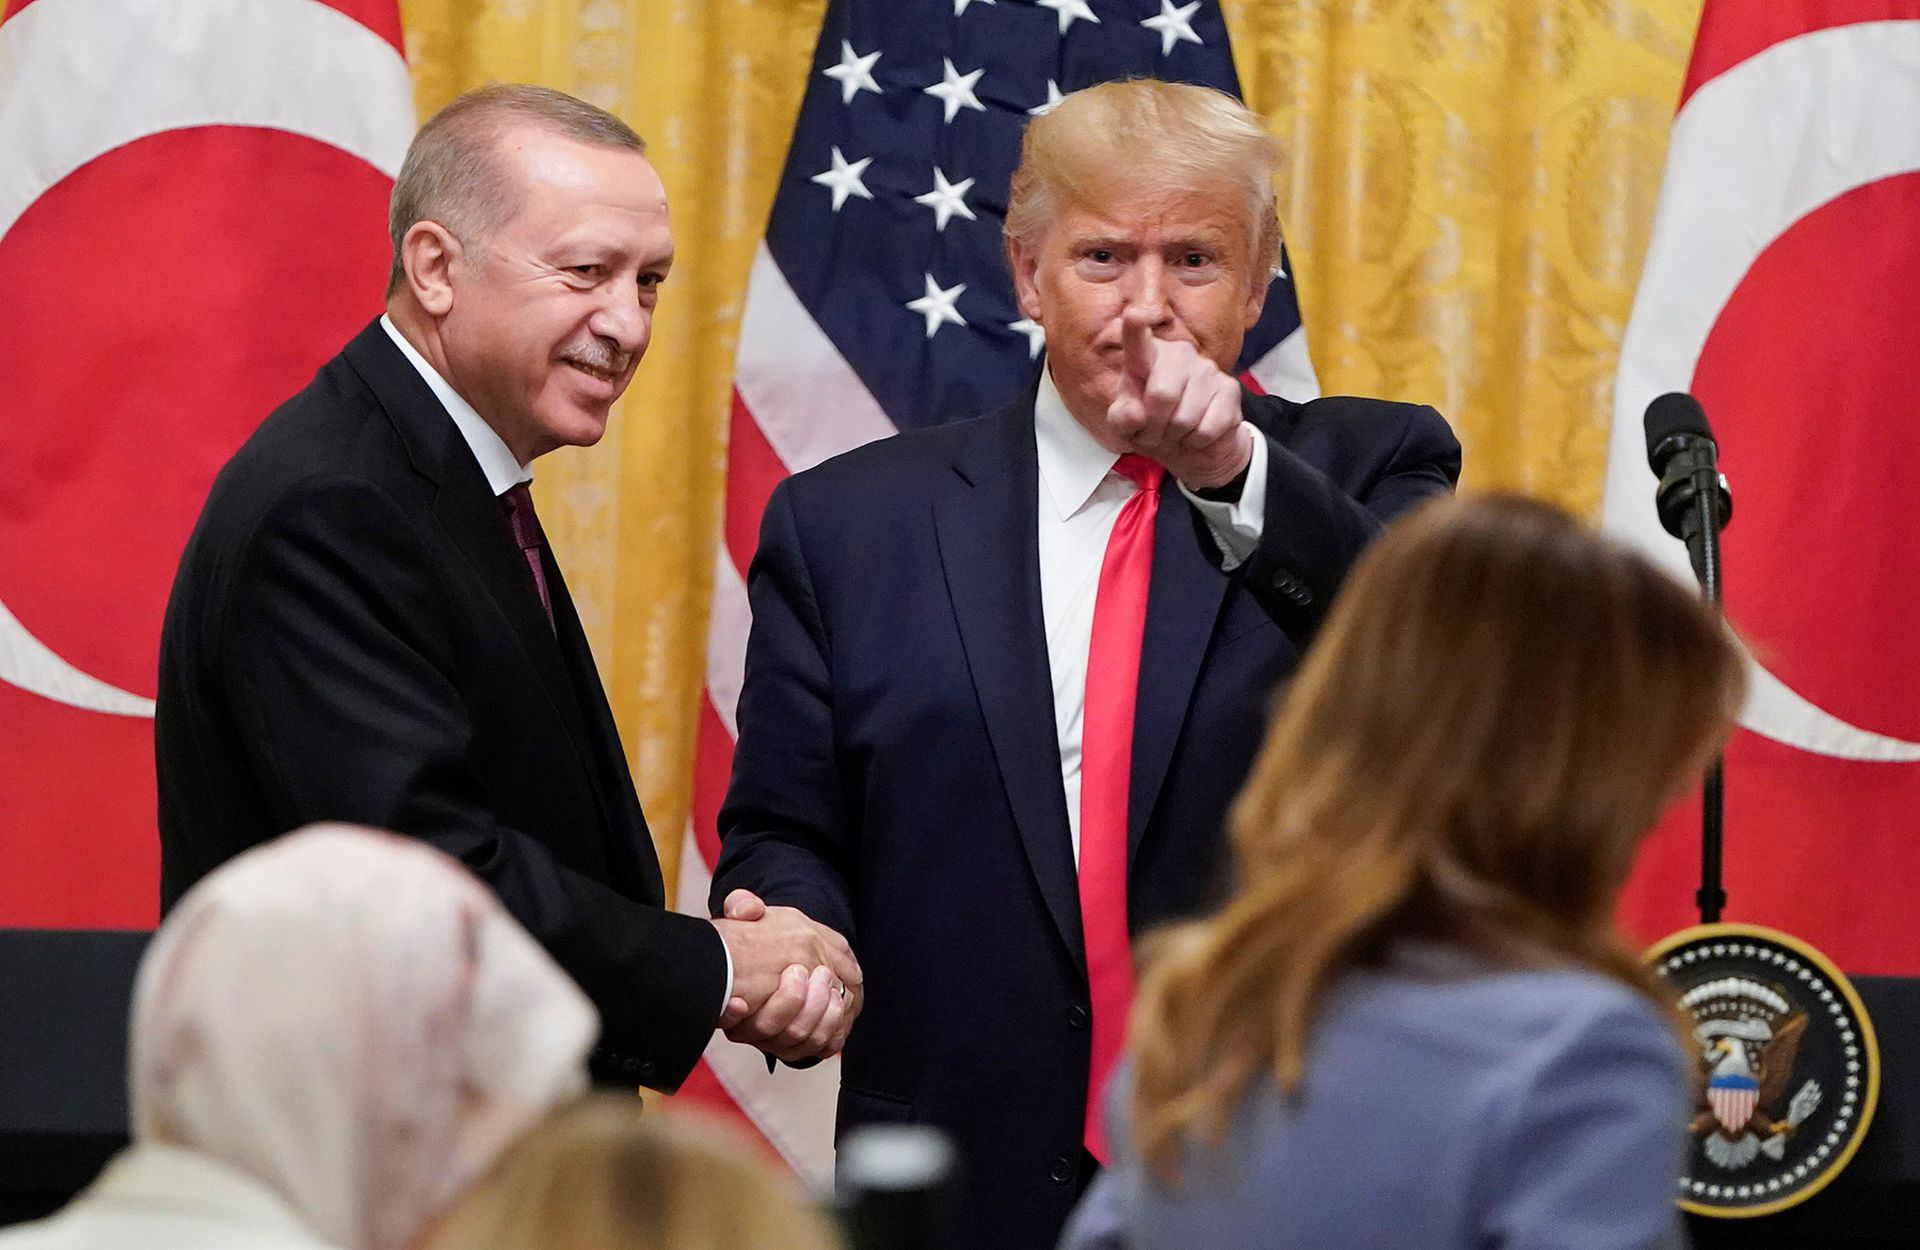 据悉，土耳其总统埃尔多安（Recep Tayyip Erdogan）与美国总统特朗普的私人关系甚佳。这也是特朗普时代土美关系相对缓和的重要原因所在。图为2019年11月13日，美国华盛顿特区，美国总统特朗普会见来访的土耳其总统埃尔多安夫妇。（Getty Images）